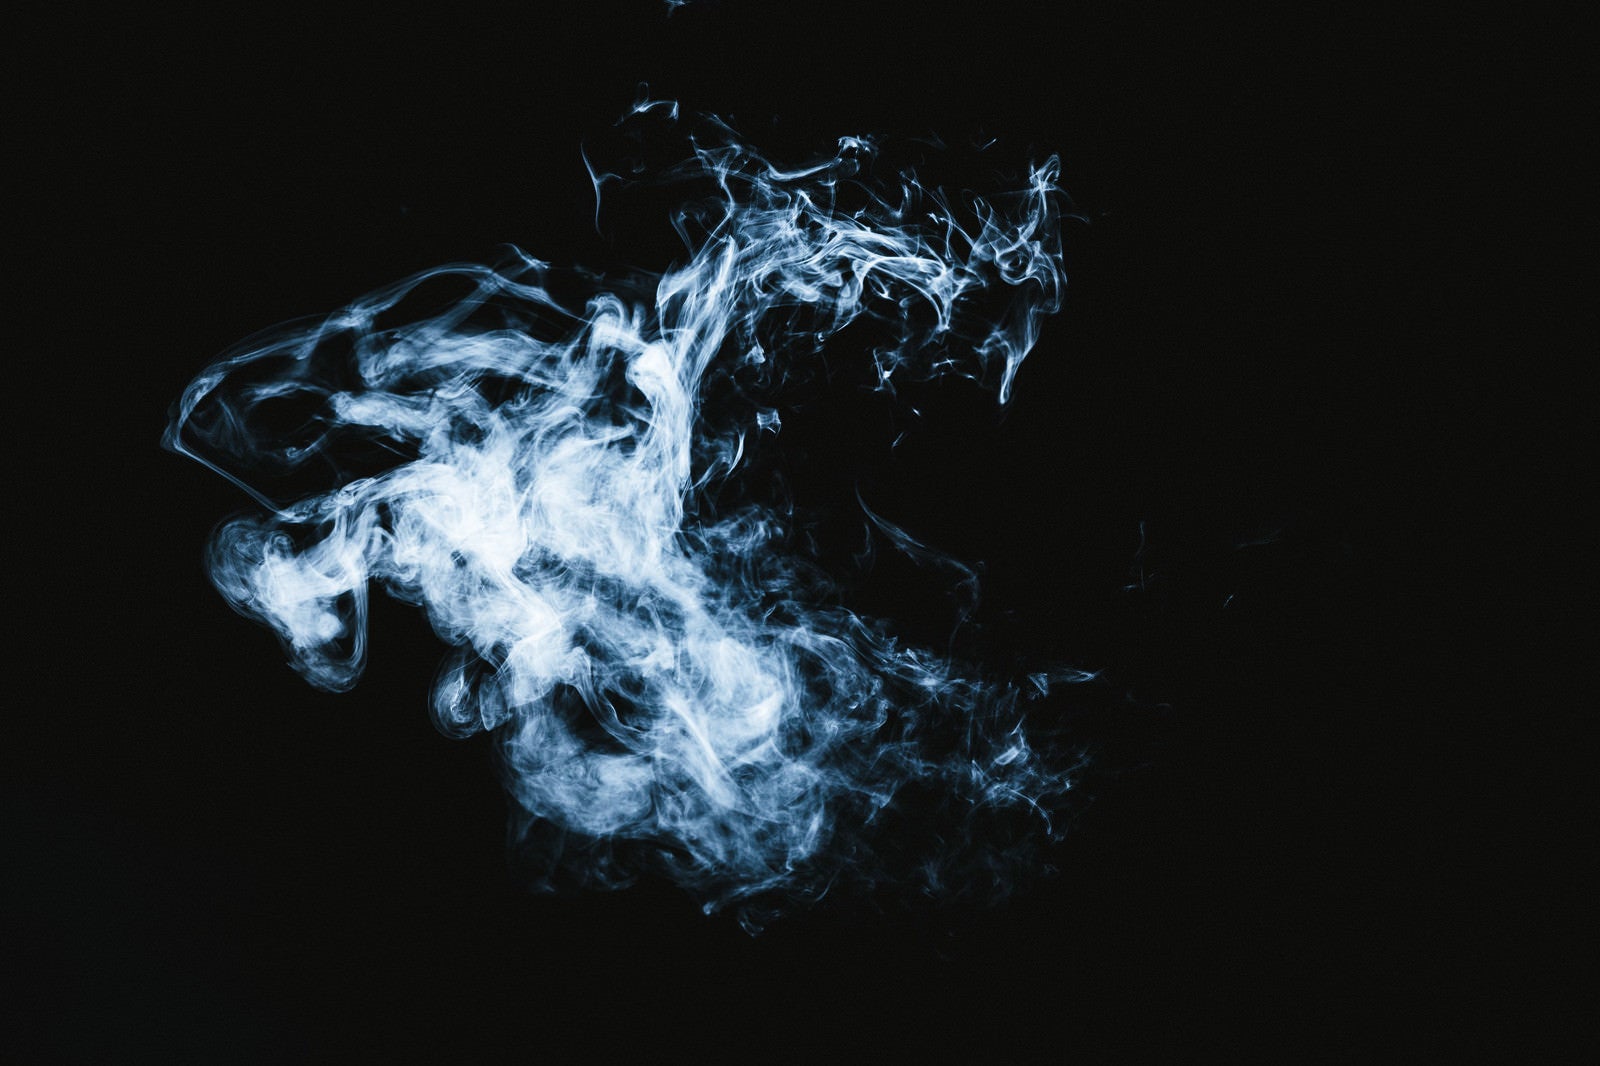 「マッドピエロのような煙」の写真